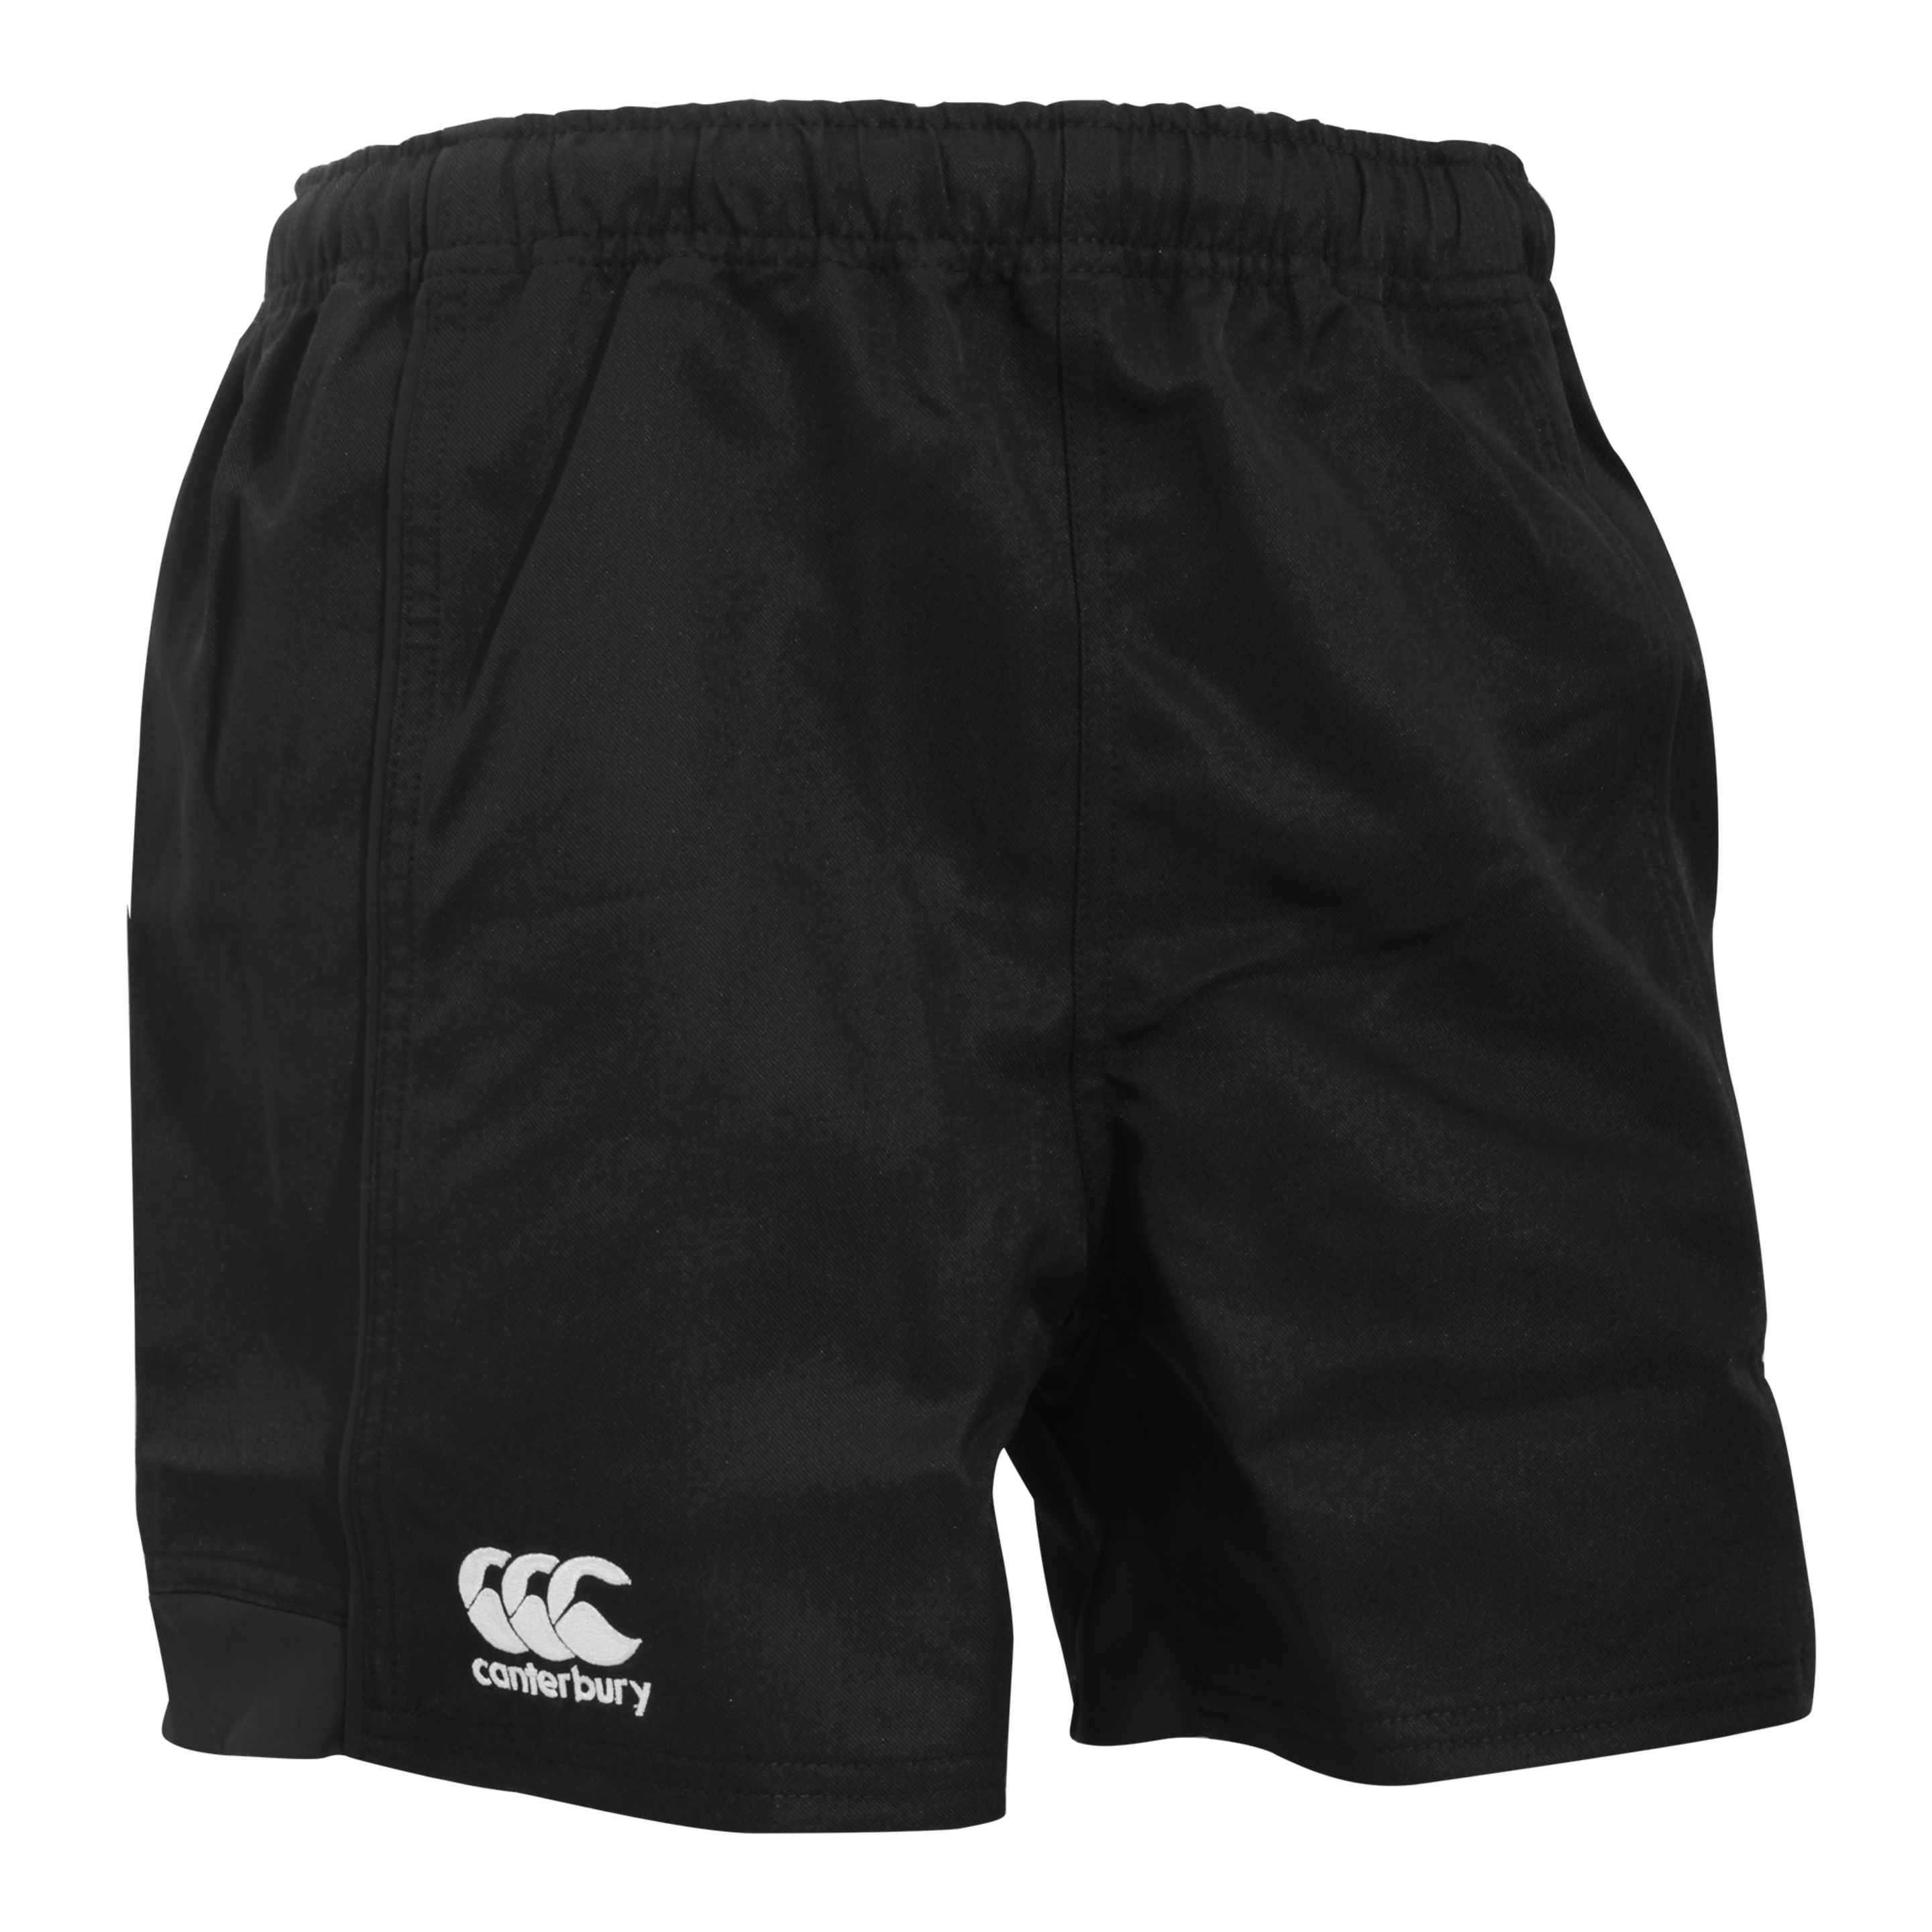 Canterbury - Pantalones Cortos De Deportes Elásticos Modelo Advantage Hombre - negro - 